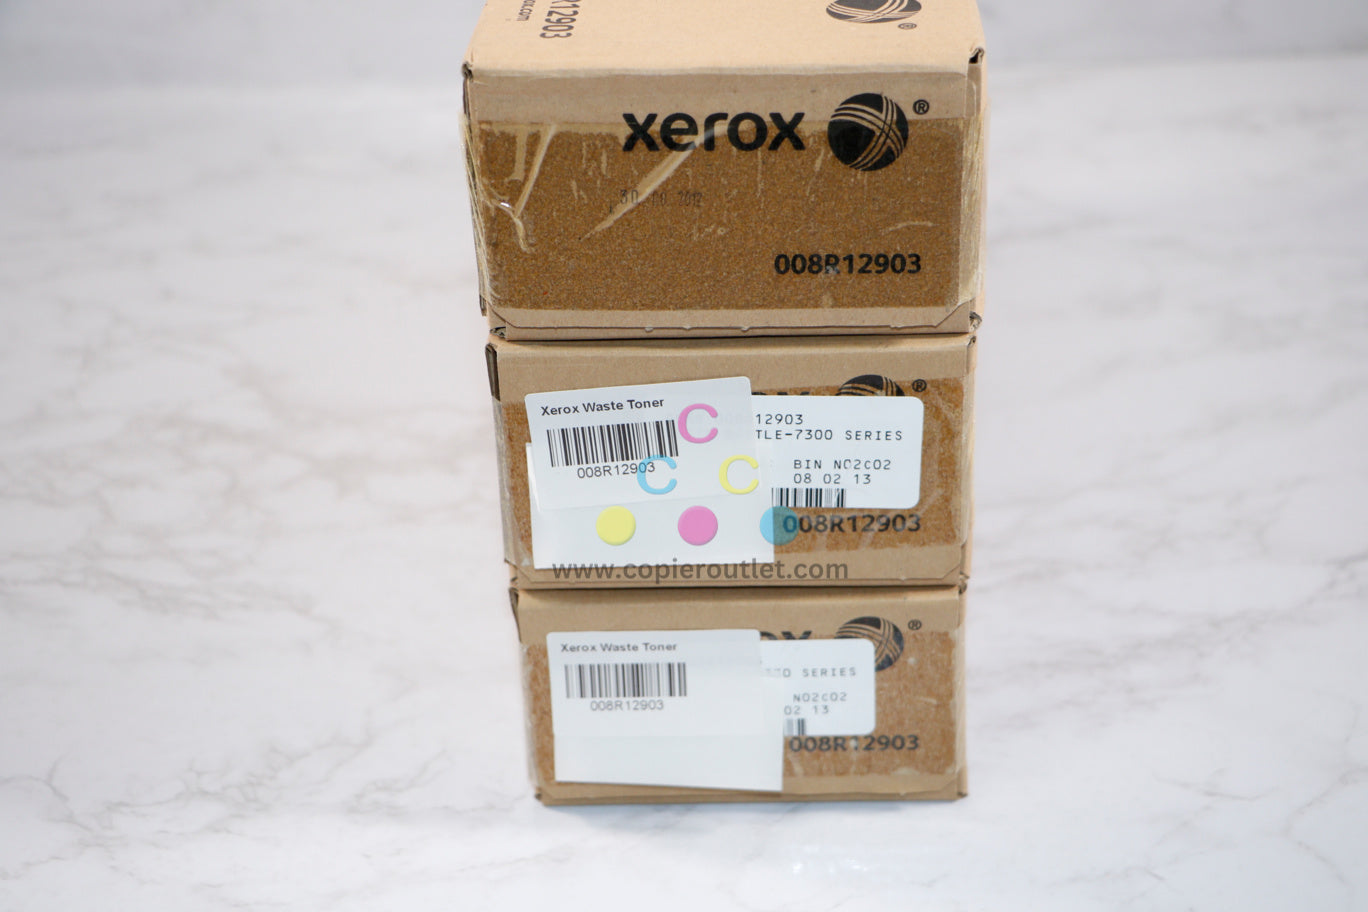 3 OEM Xerox C2128,C2636,C32,C3545,C40 Toner Waste Containers 008R12903(8R12903)